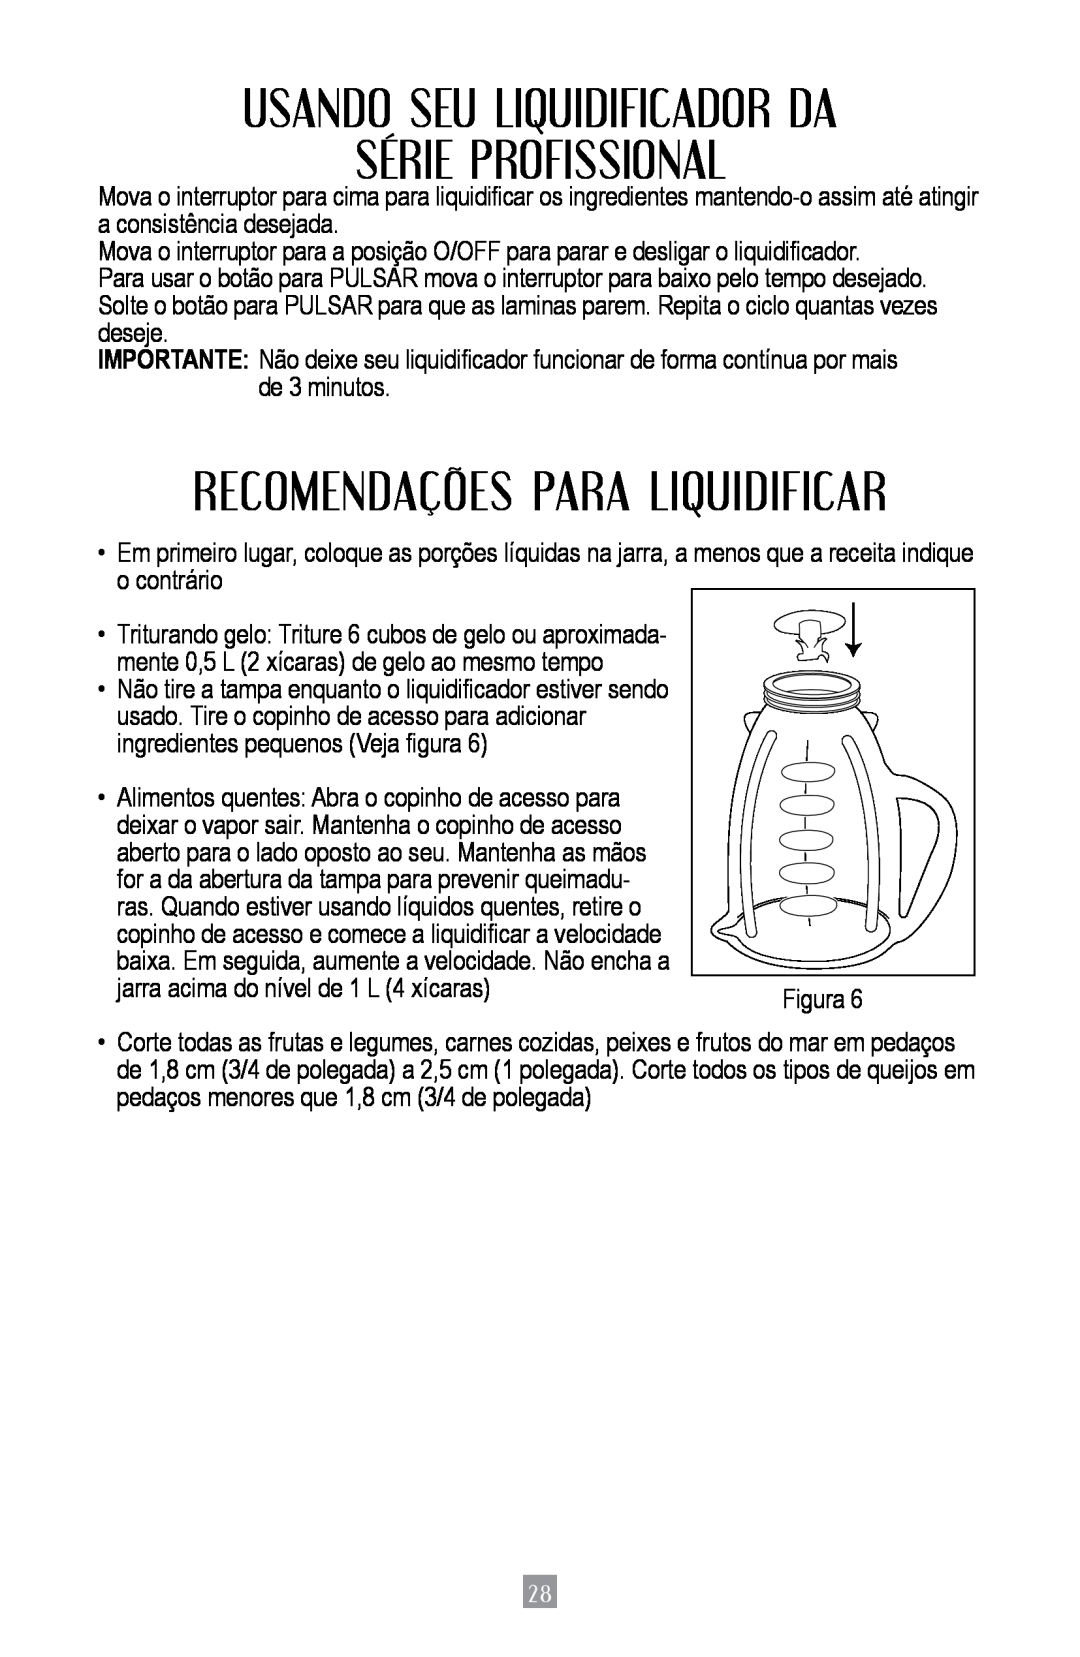 Oster BPST02-B-050 instruction manual Usando Seu Liquidificador Da Série Profissional, Recomendações Para Liquidificar 